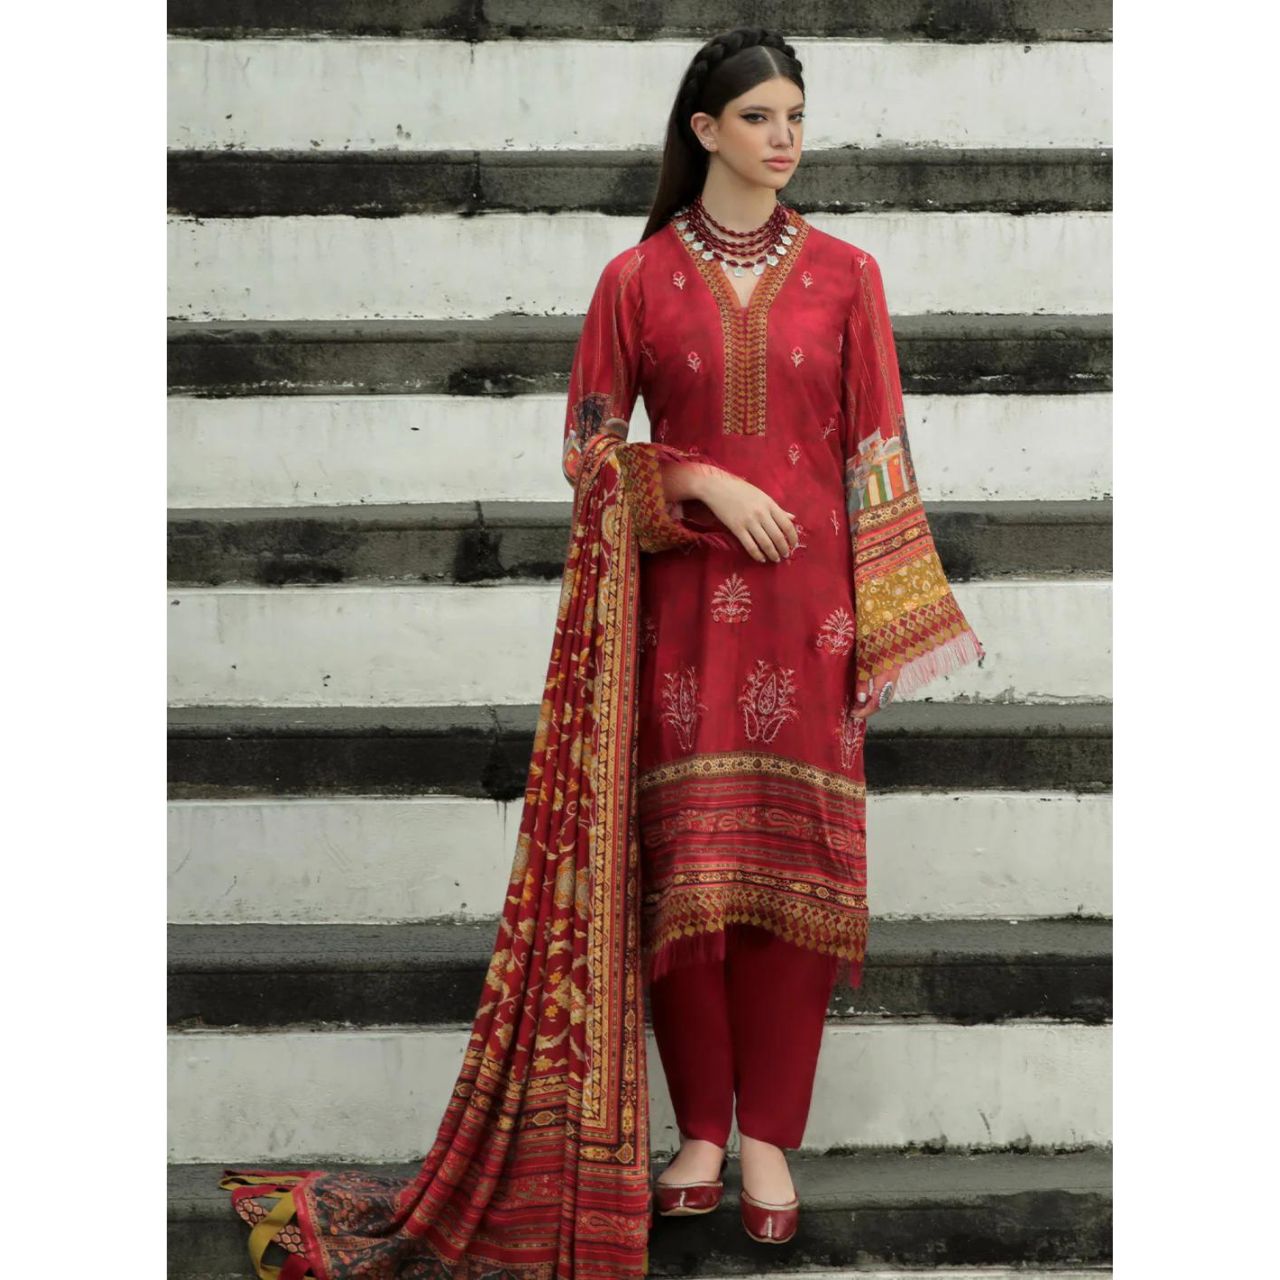 Ready To Wear Women Clothing Online Shopping in Pakistan - Hutch.pk